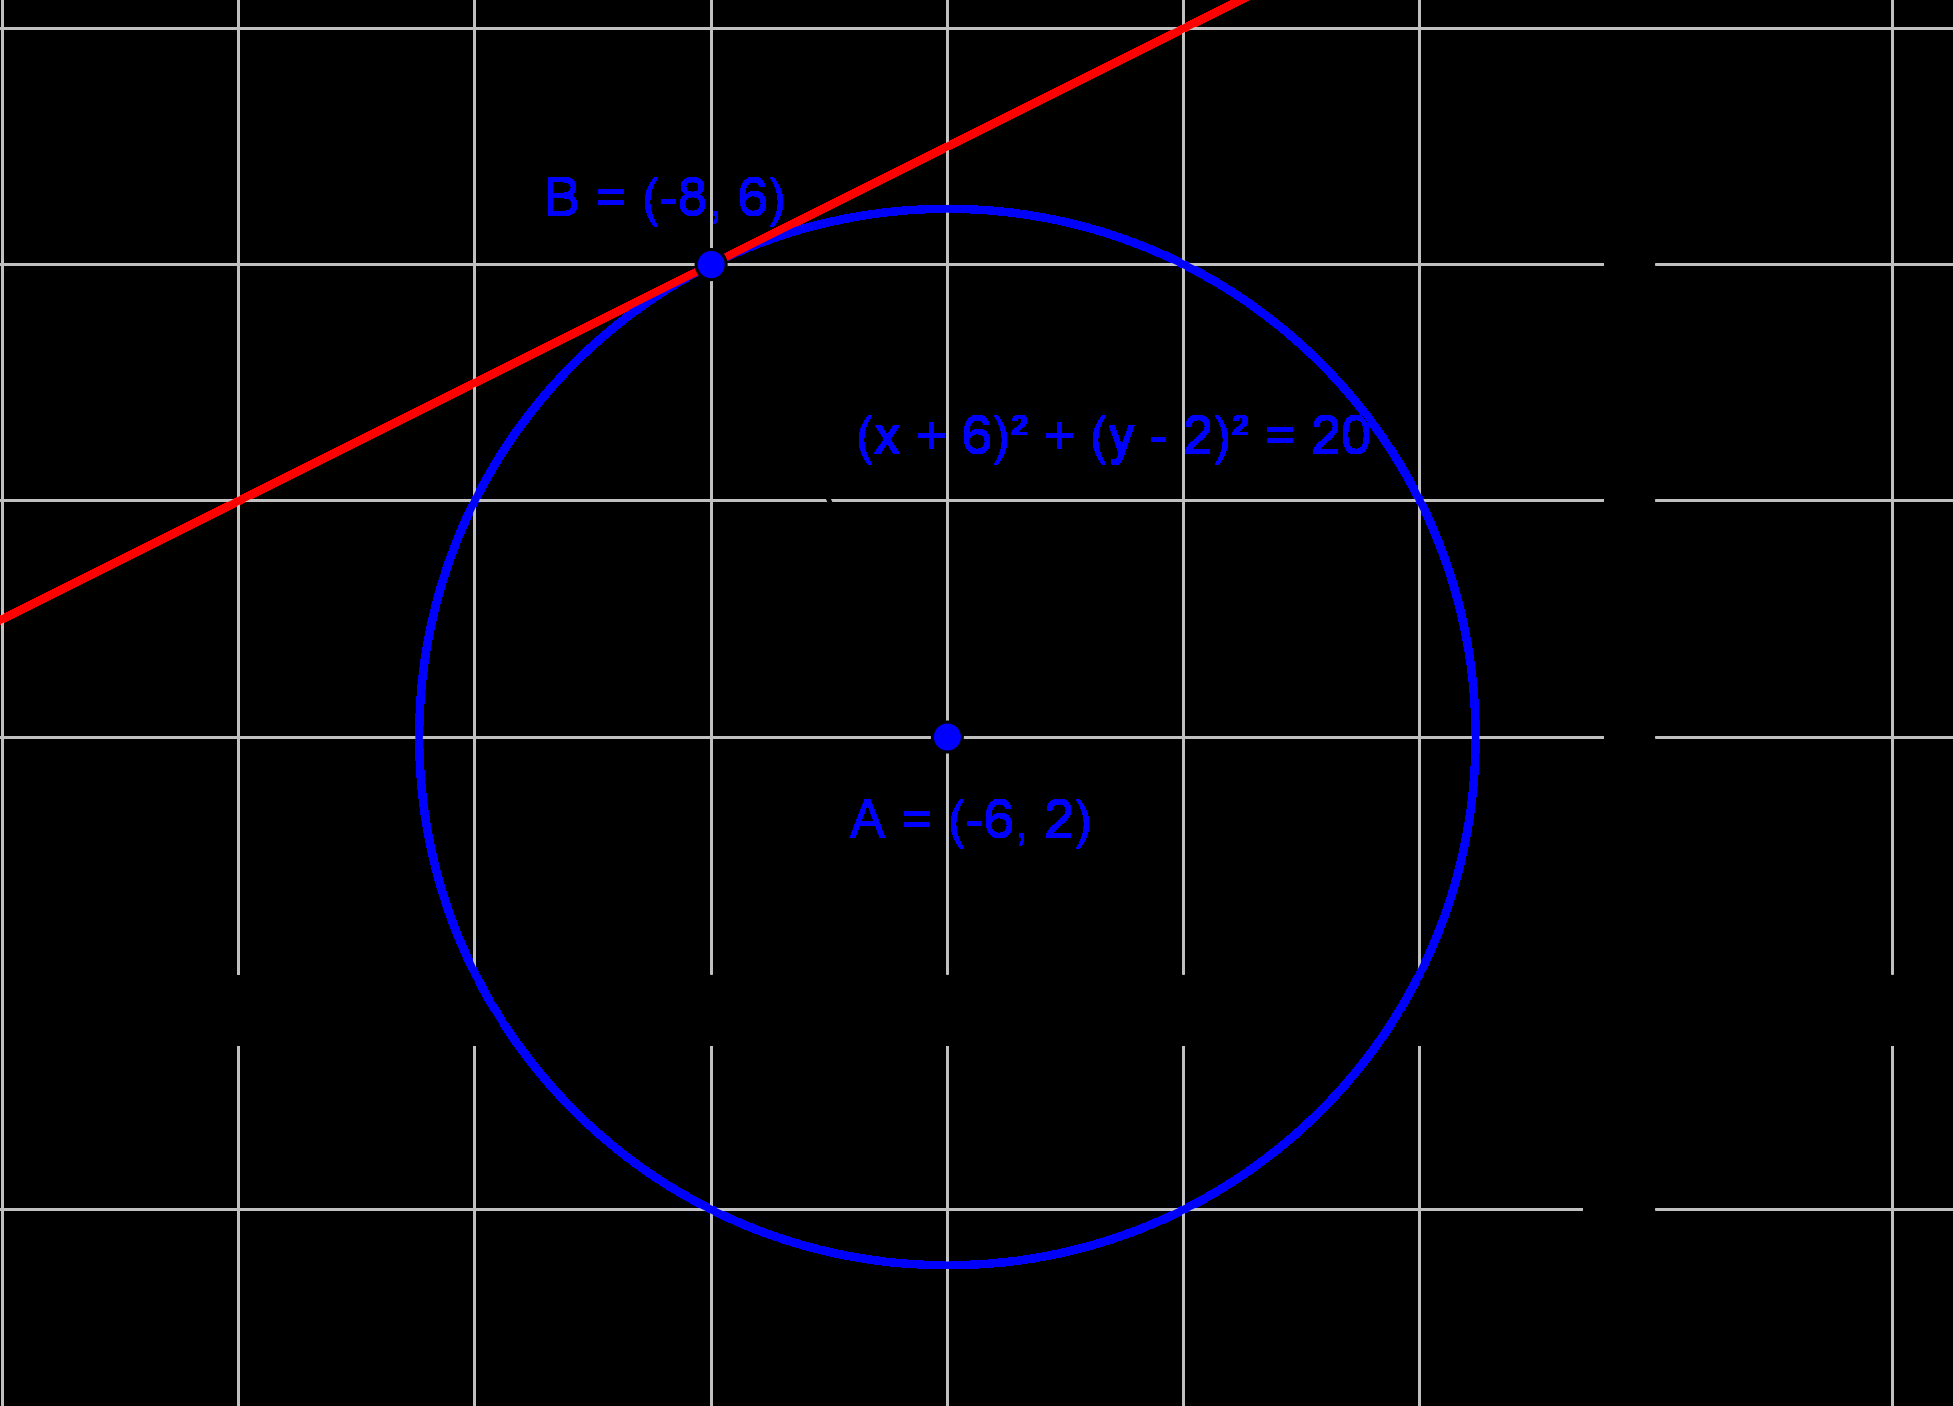 305 Tutkitaan, onko piste ( 8,6) ympyrällä ( x+ 6) + ( y ) = 0. Sijoitetaan ympyrän yhtälöön x = 8 ja y = 6.